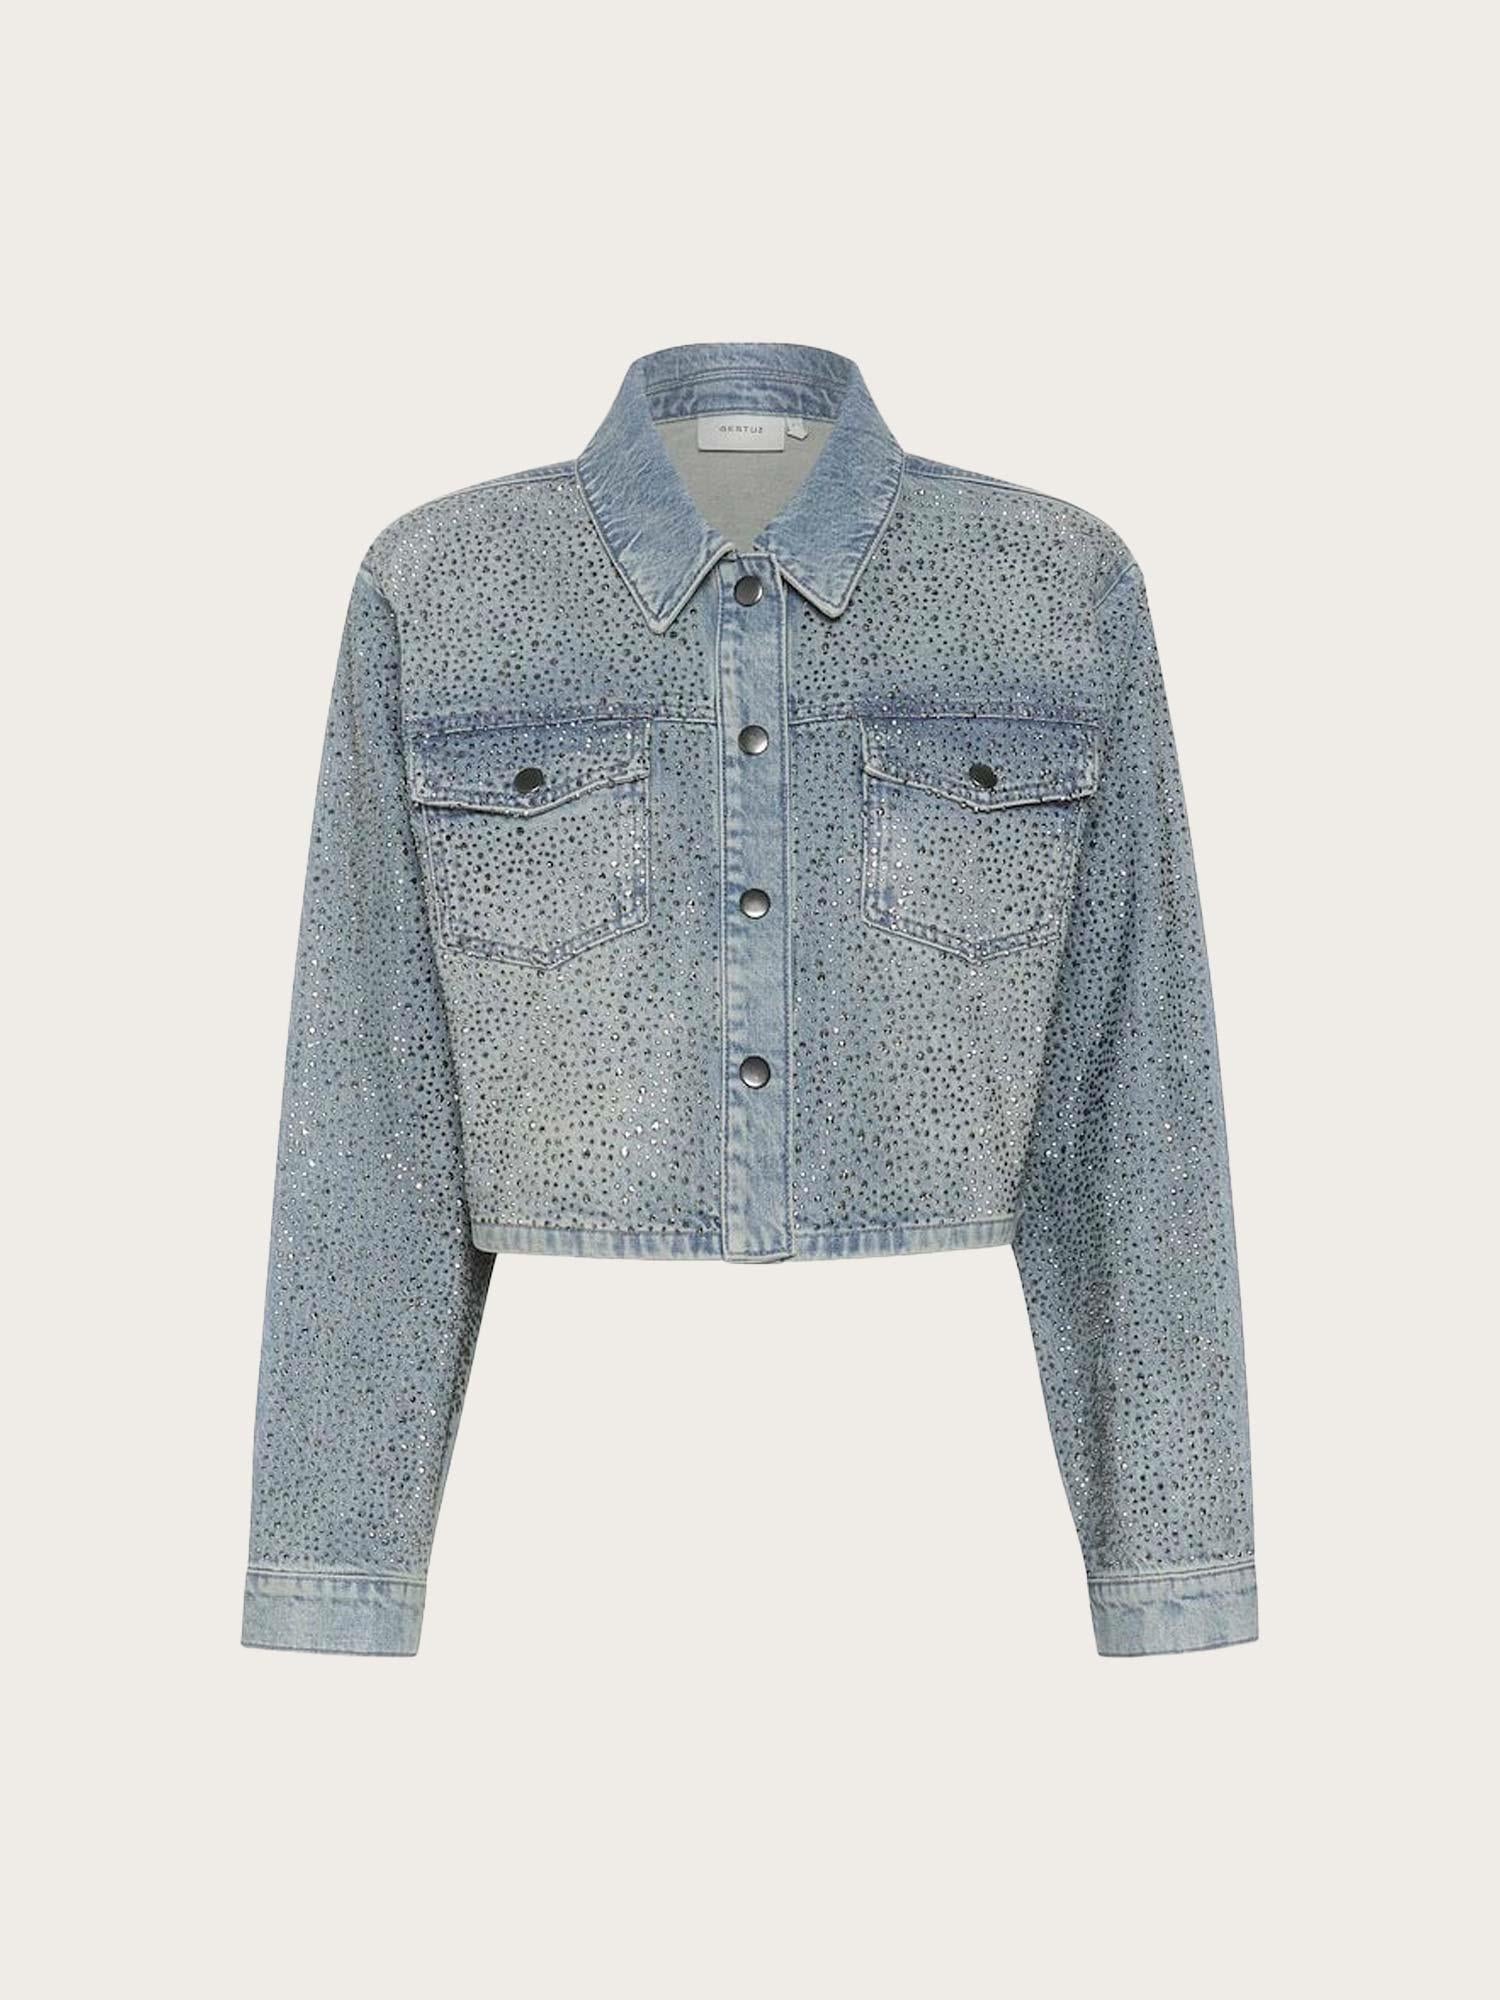 Nadiva Jacket - Mid Blue Washed